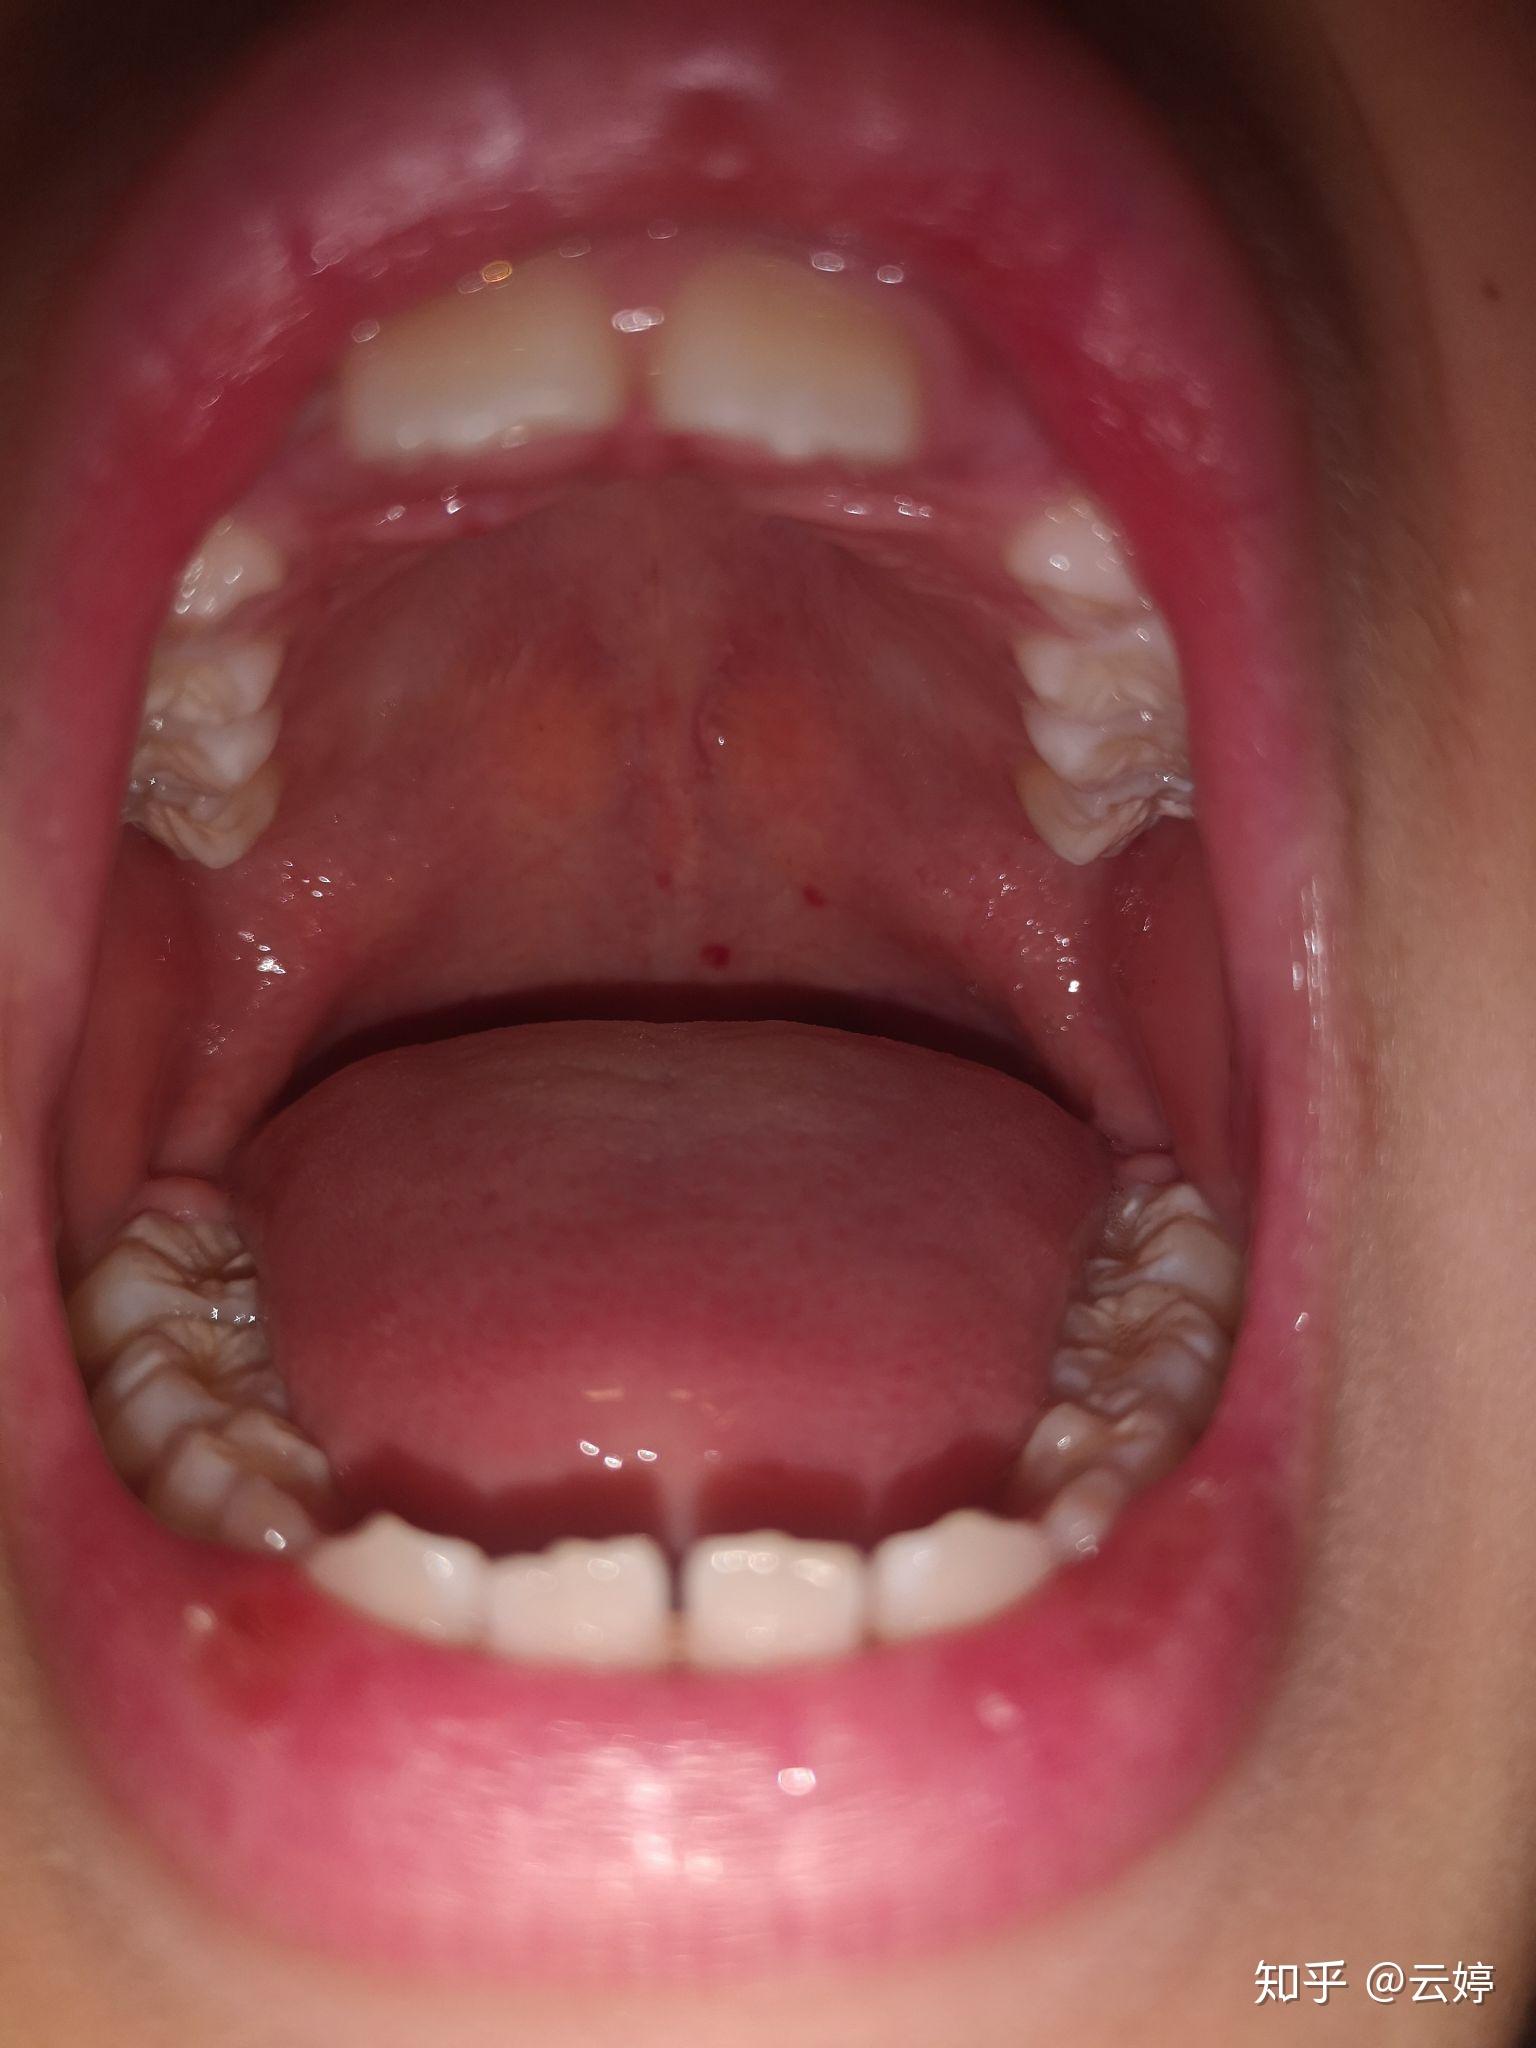 八岁孩子发烧以后口腔里面有红斑是疱疹性咽颊炎吗